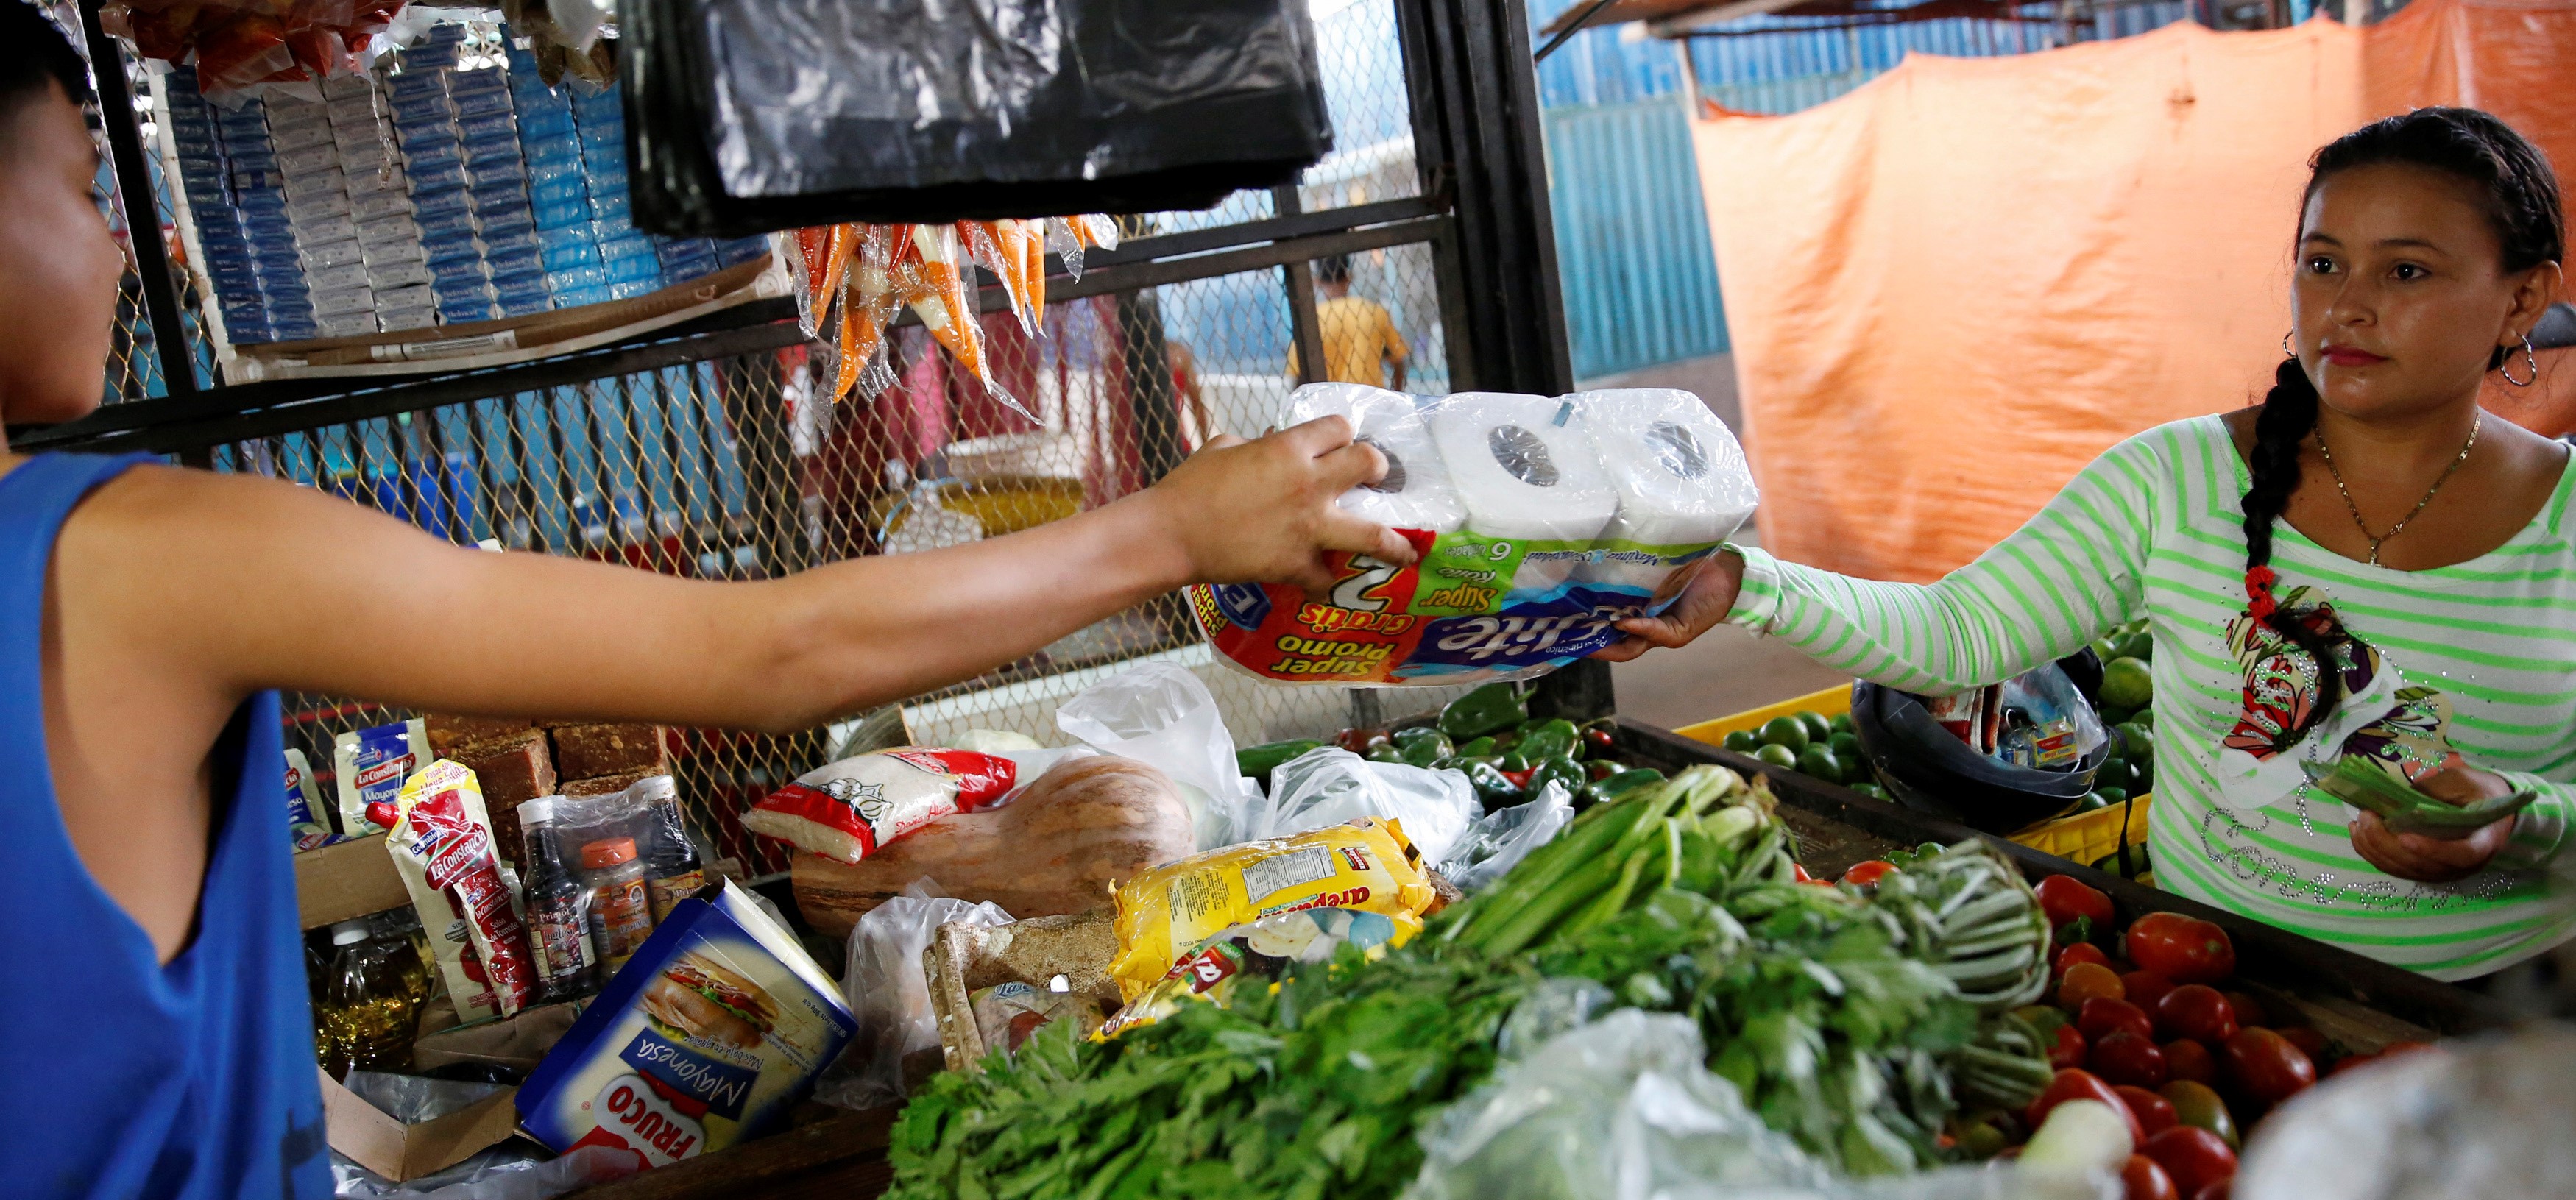 Los venezolanos ahora contrabandean comida desde Colombia